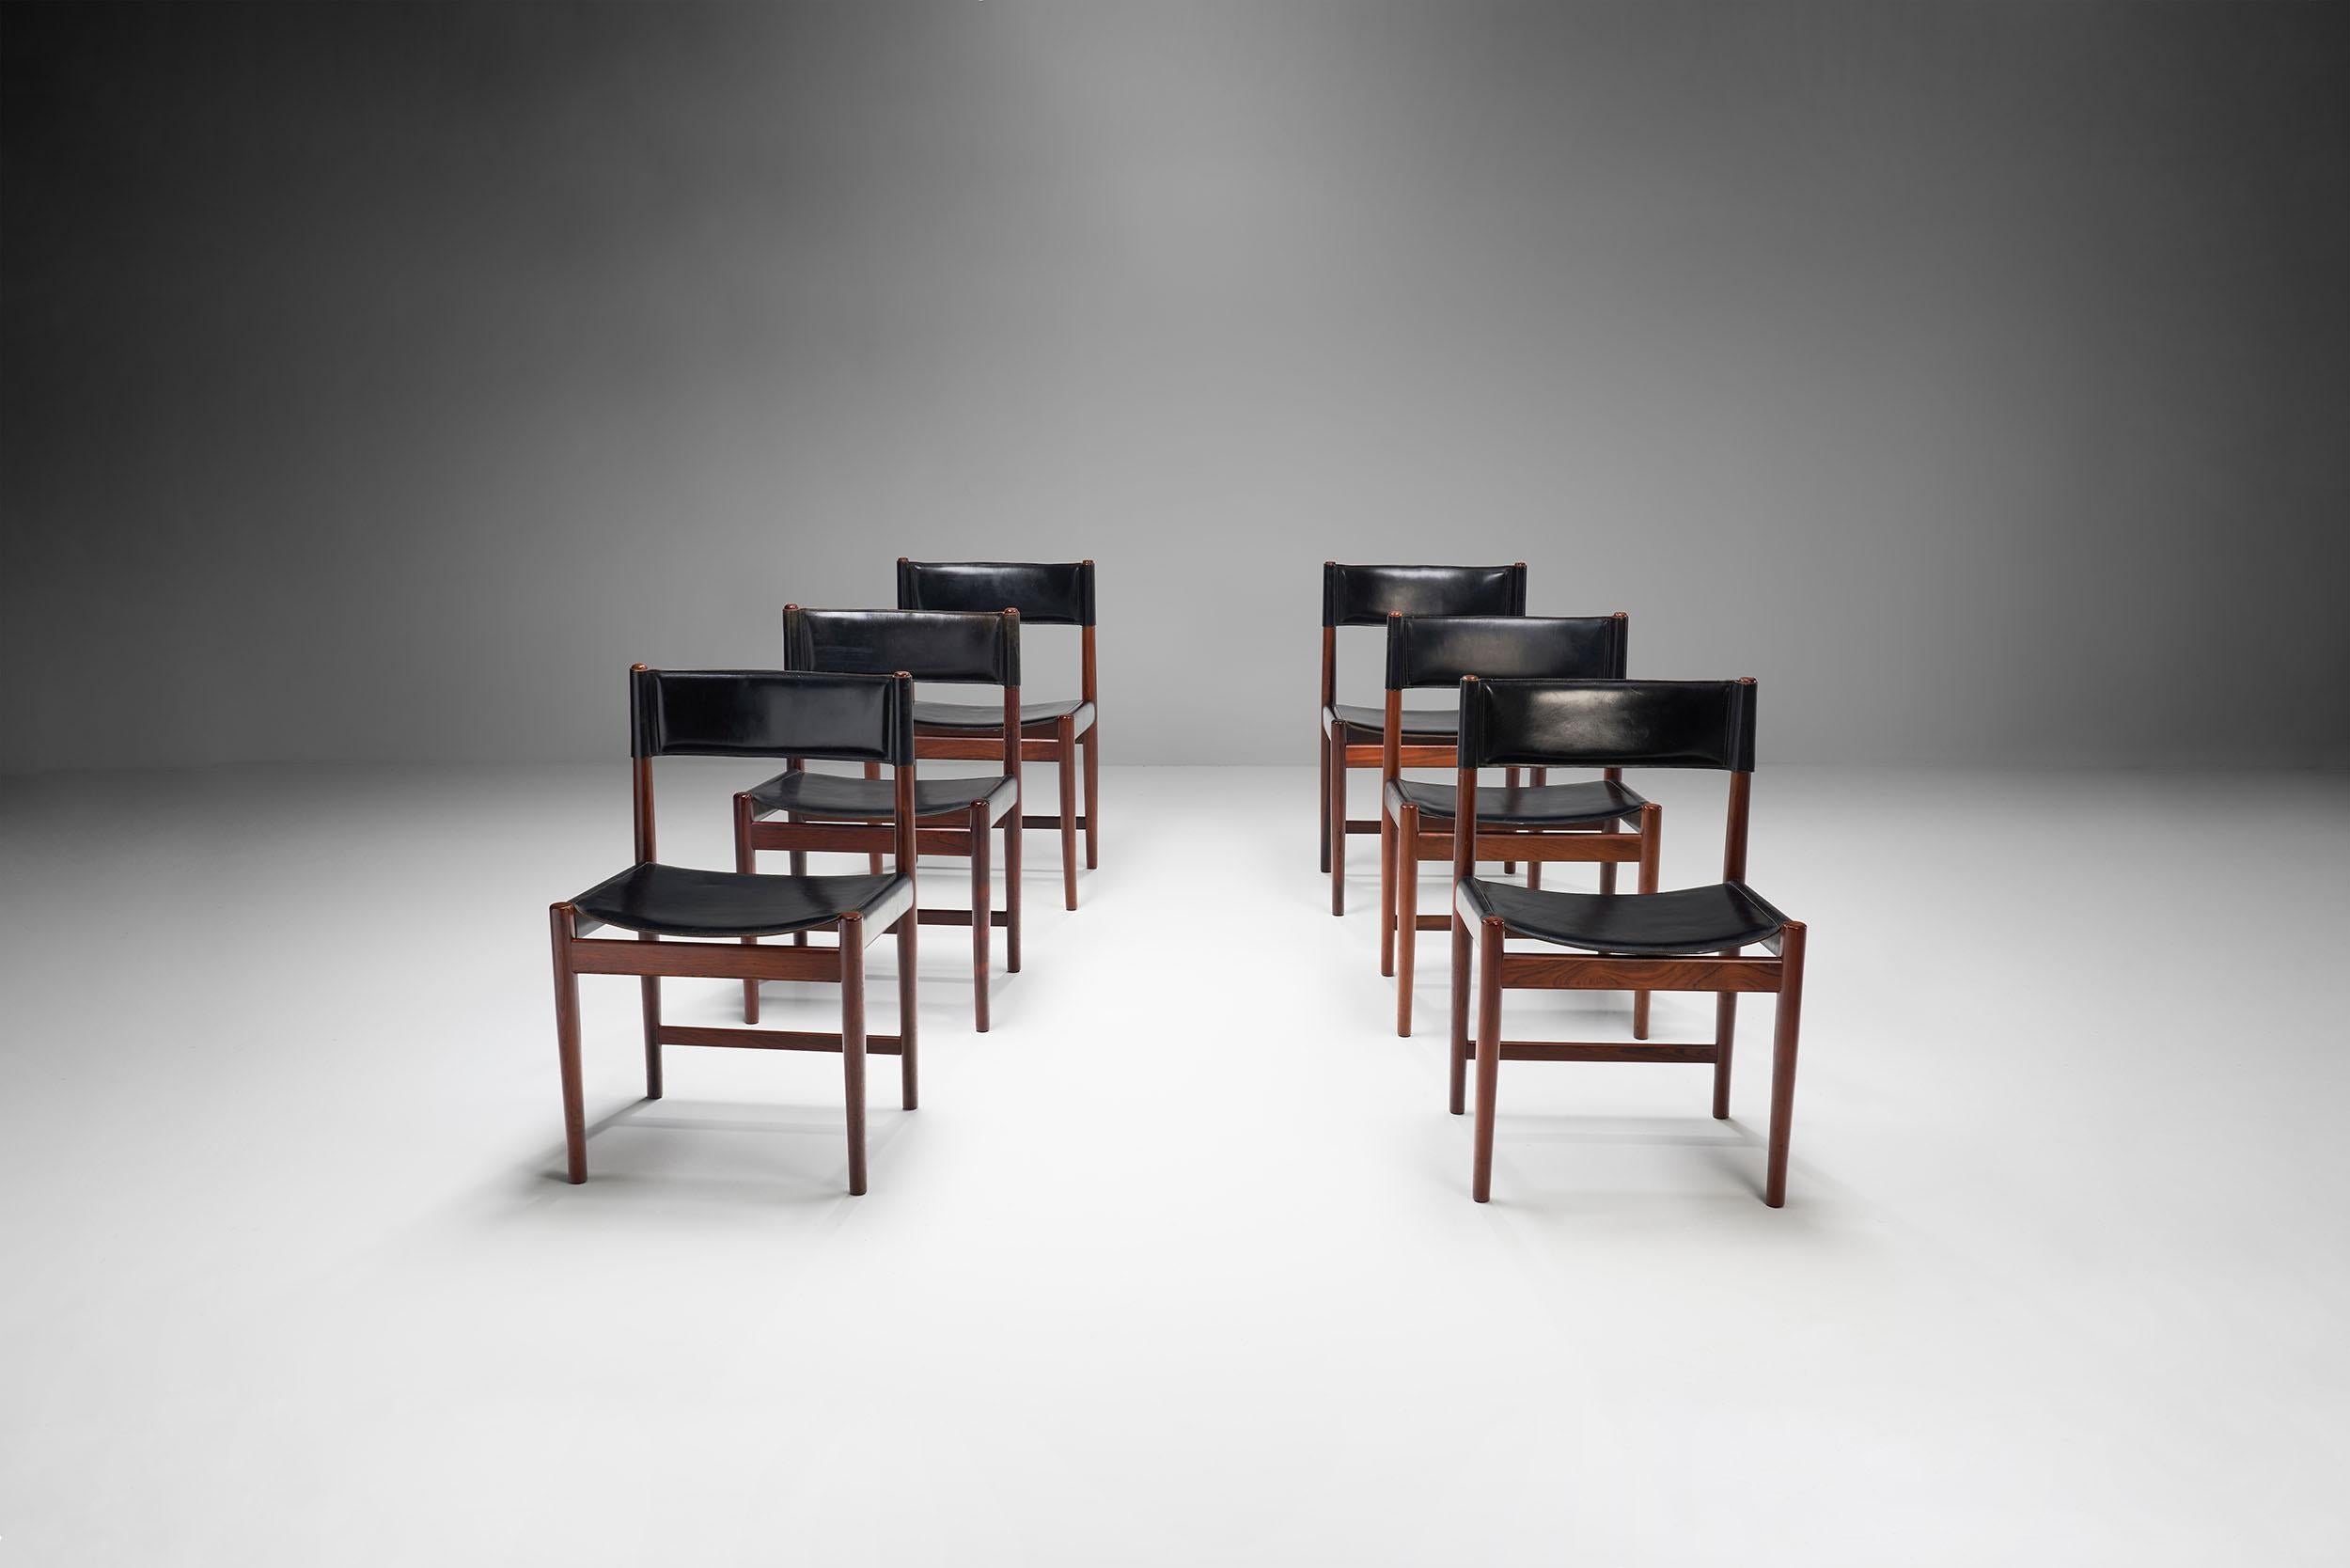 Dieses Set aus sechs Esszimmerstühlen des dänischen Designers Kurt Østervig ist ein schönes Beispiel für schlichtes, raffiniertes dänisches Design aus der Mitte des letzten Jahrhunderts.

Die schwarzen Lederstühle sind aus massivem dunklem Holz